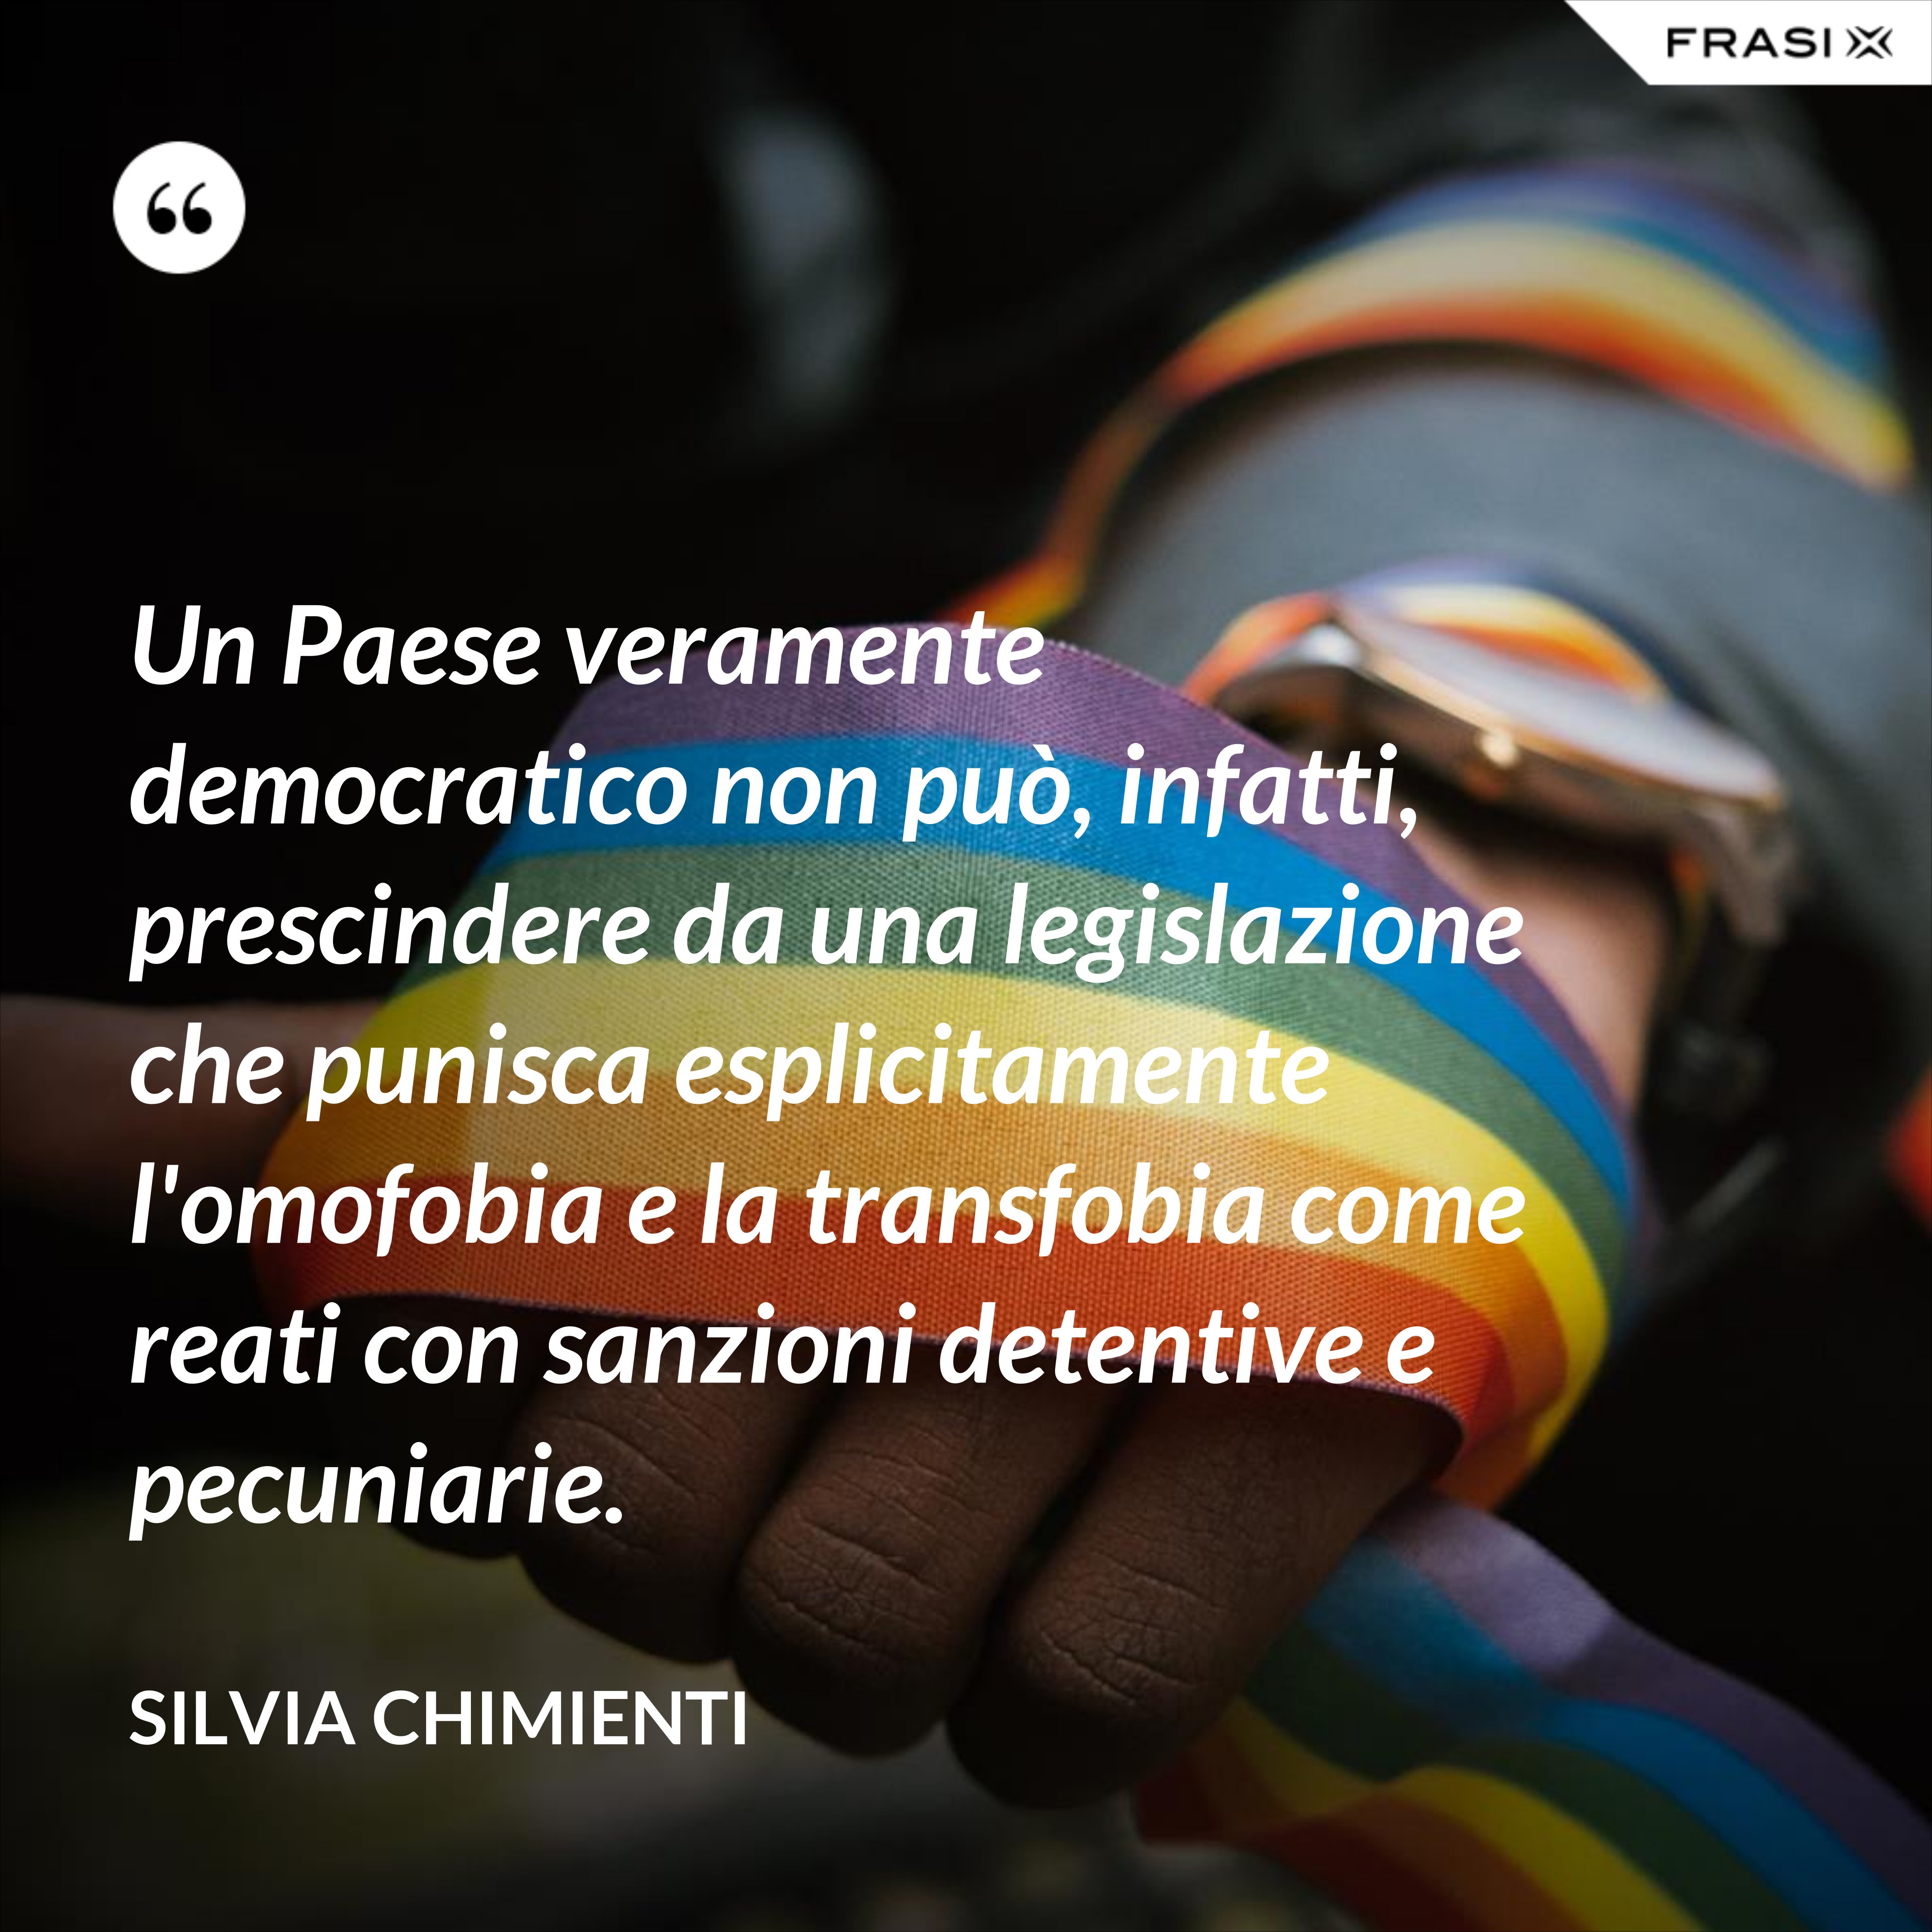 Un Paese veramente democratico non può, infatti, prescindere da una legislazione che punisca esplicitamente l'omofobia e la transfobia come reati con sanzioni detentive e pecuniarie. - Silvia Chimienti